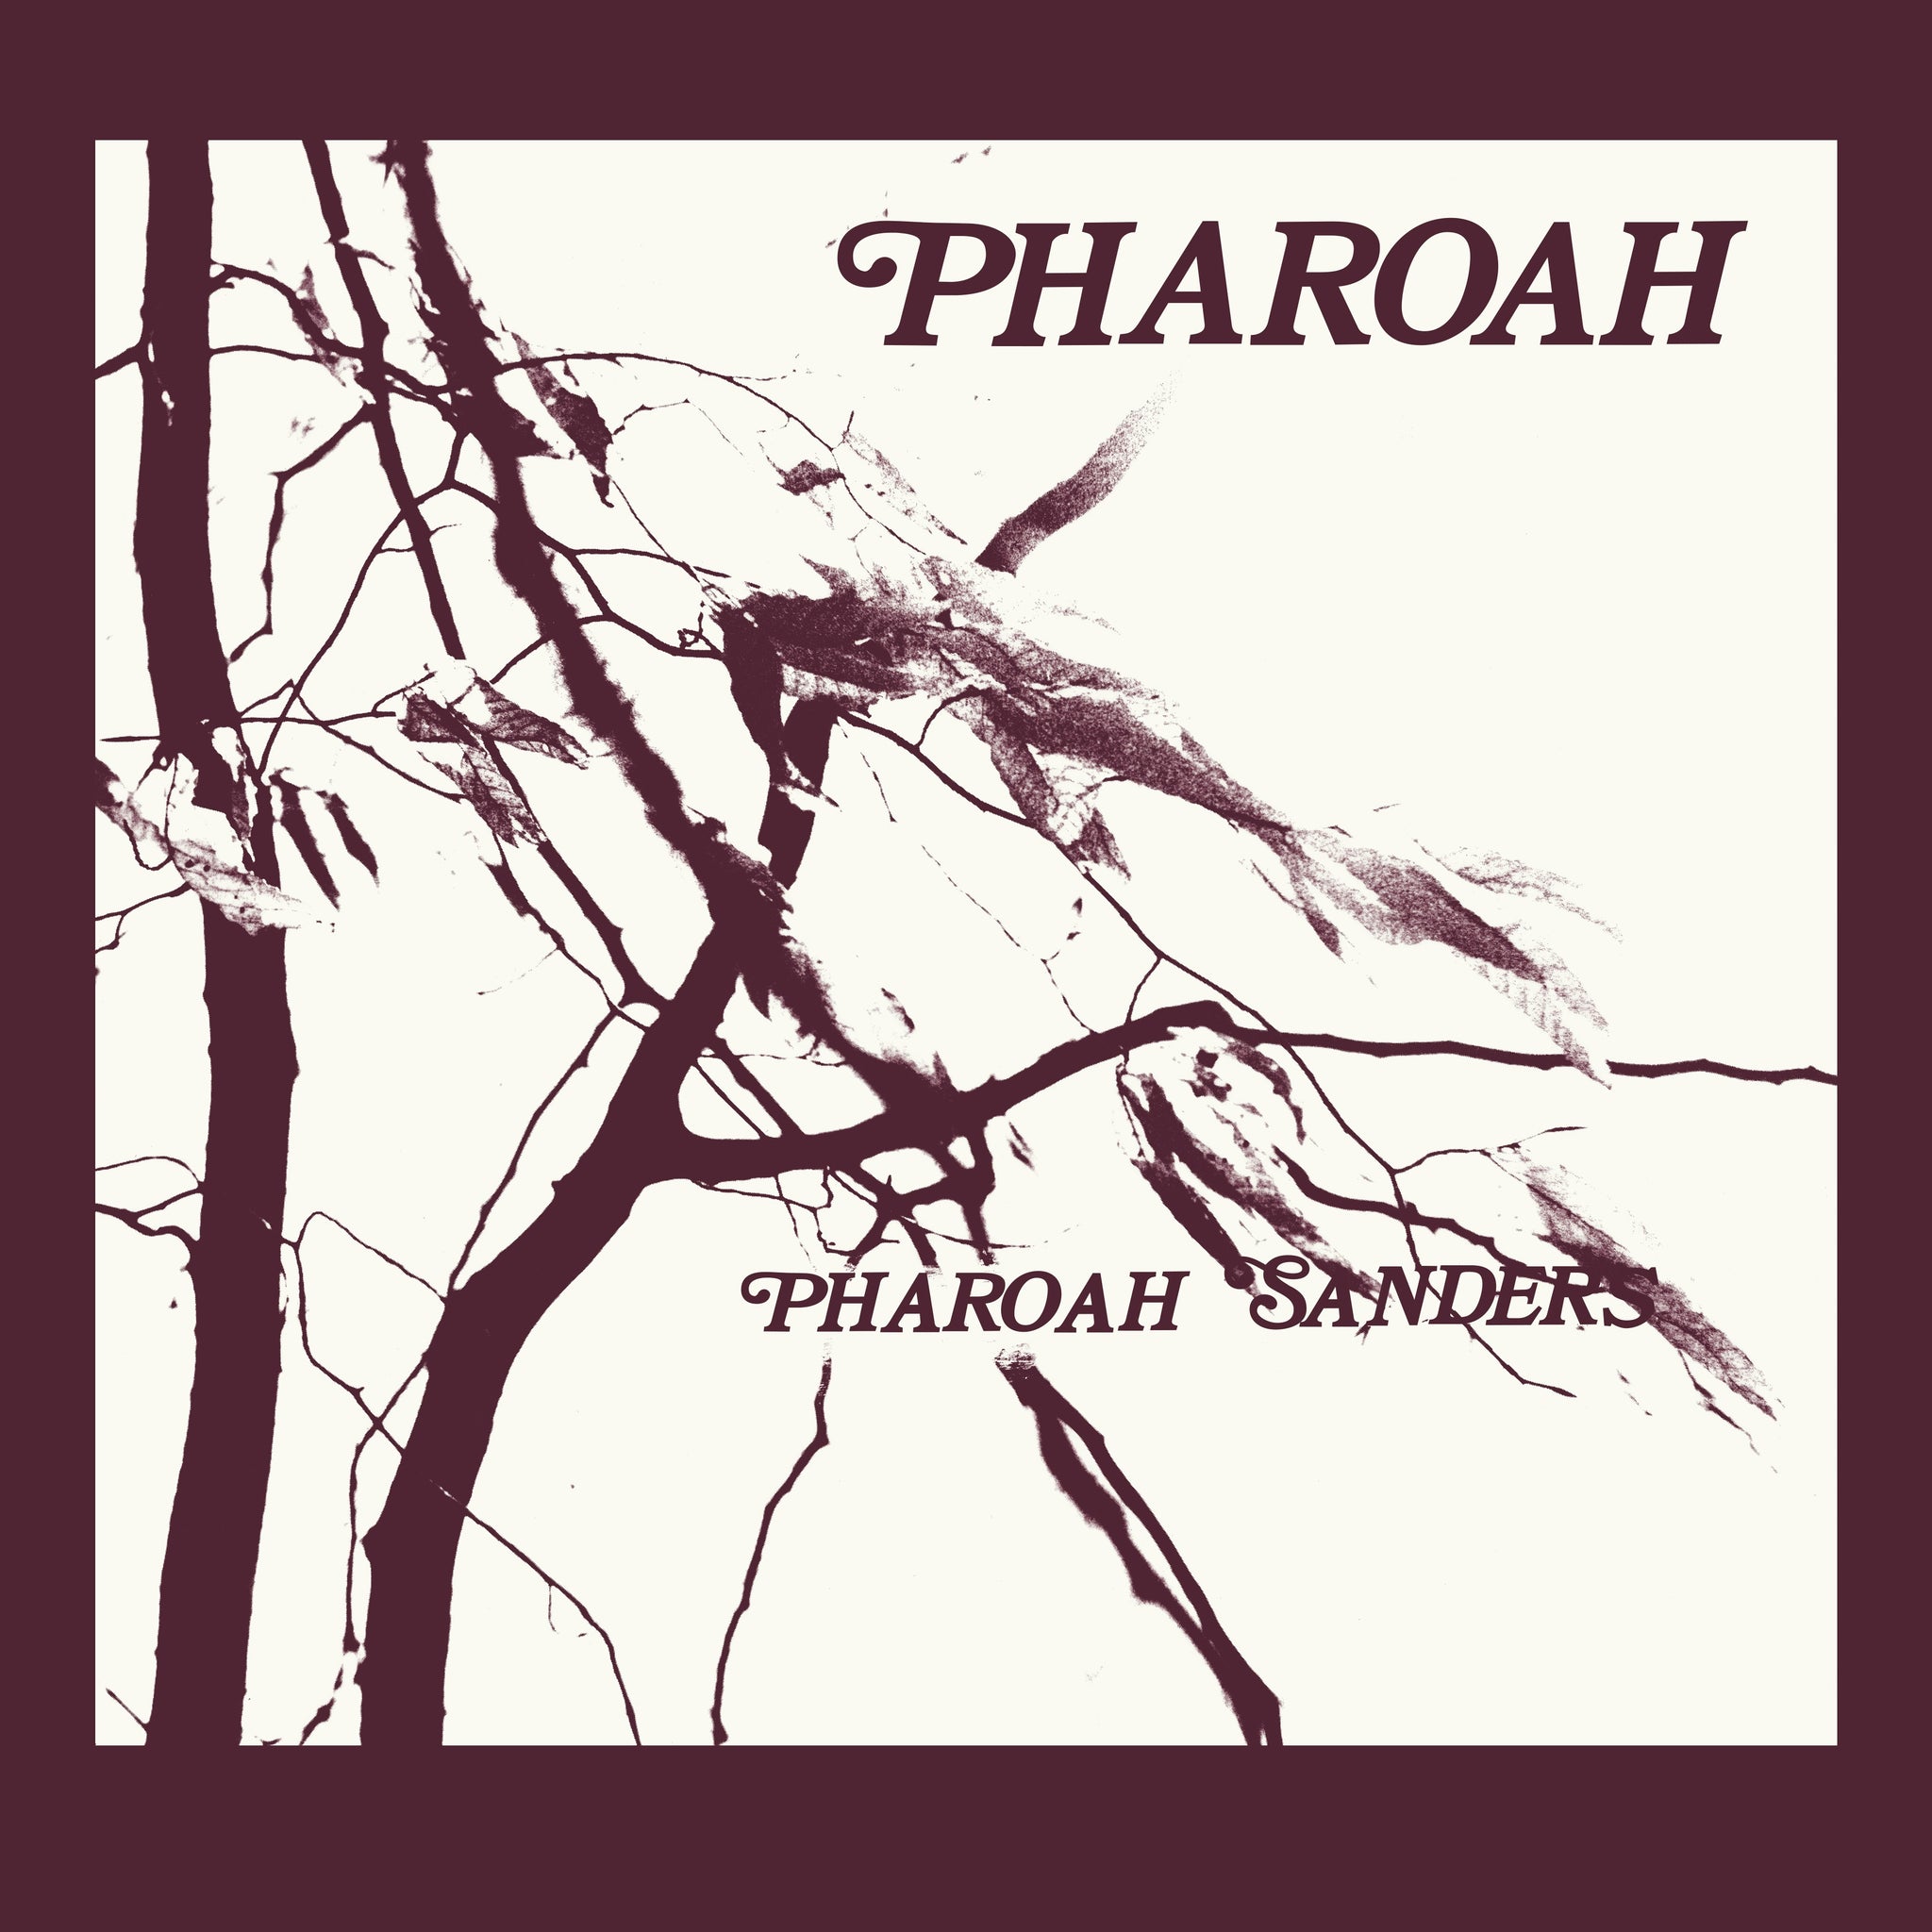 PHAROAH SANDERS - Pharoah - 2CD + 70-page Booklet - Deluxe Box Set [SEP 15]